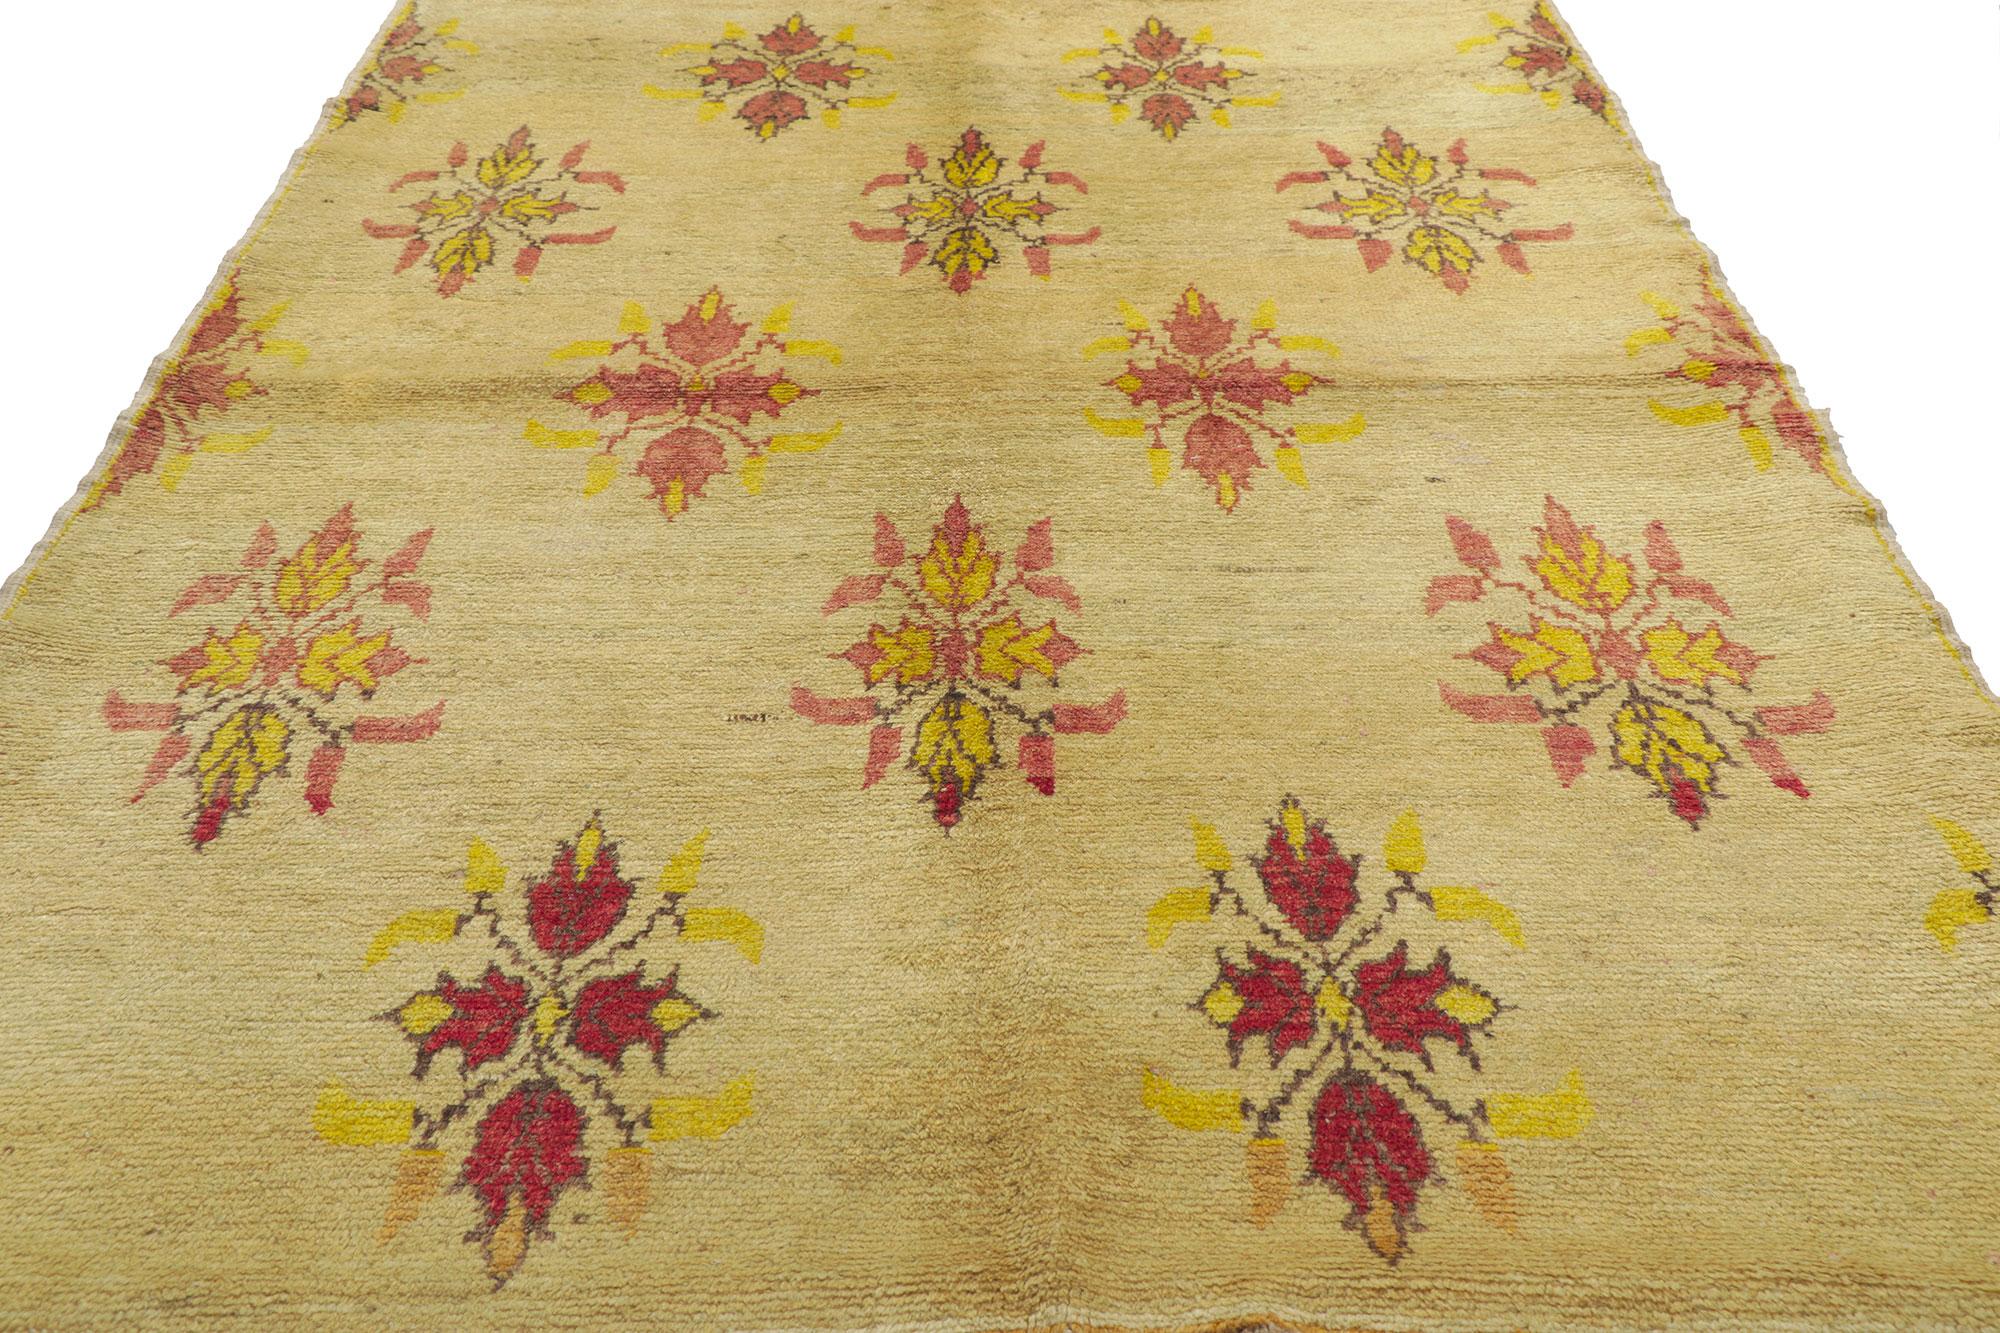 prairie style rugs